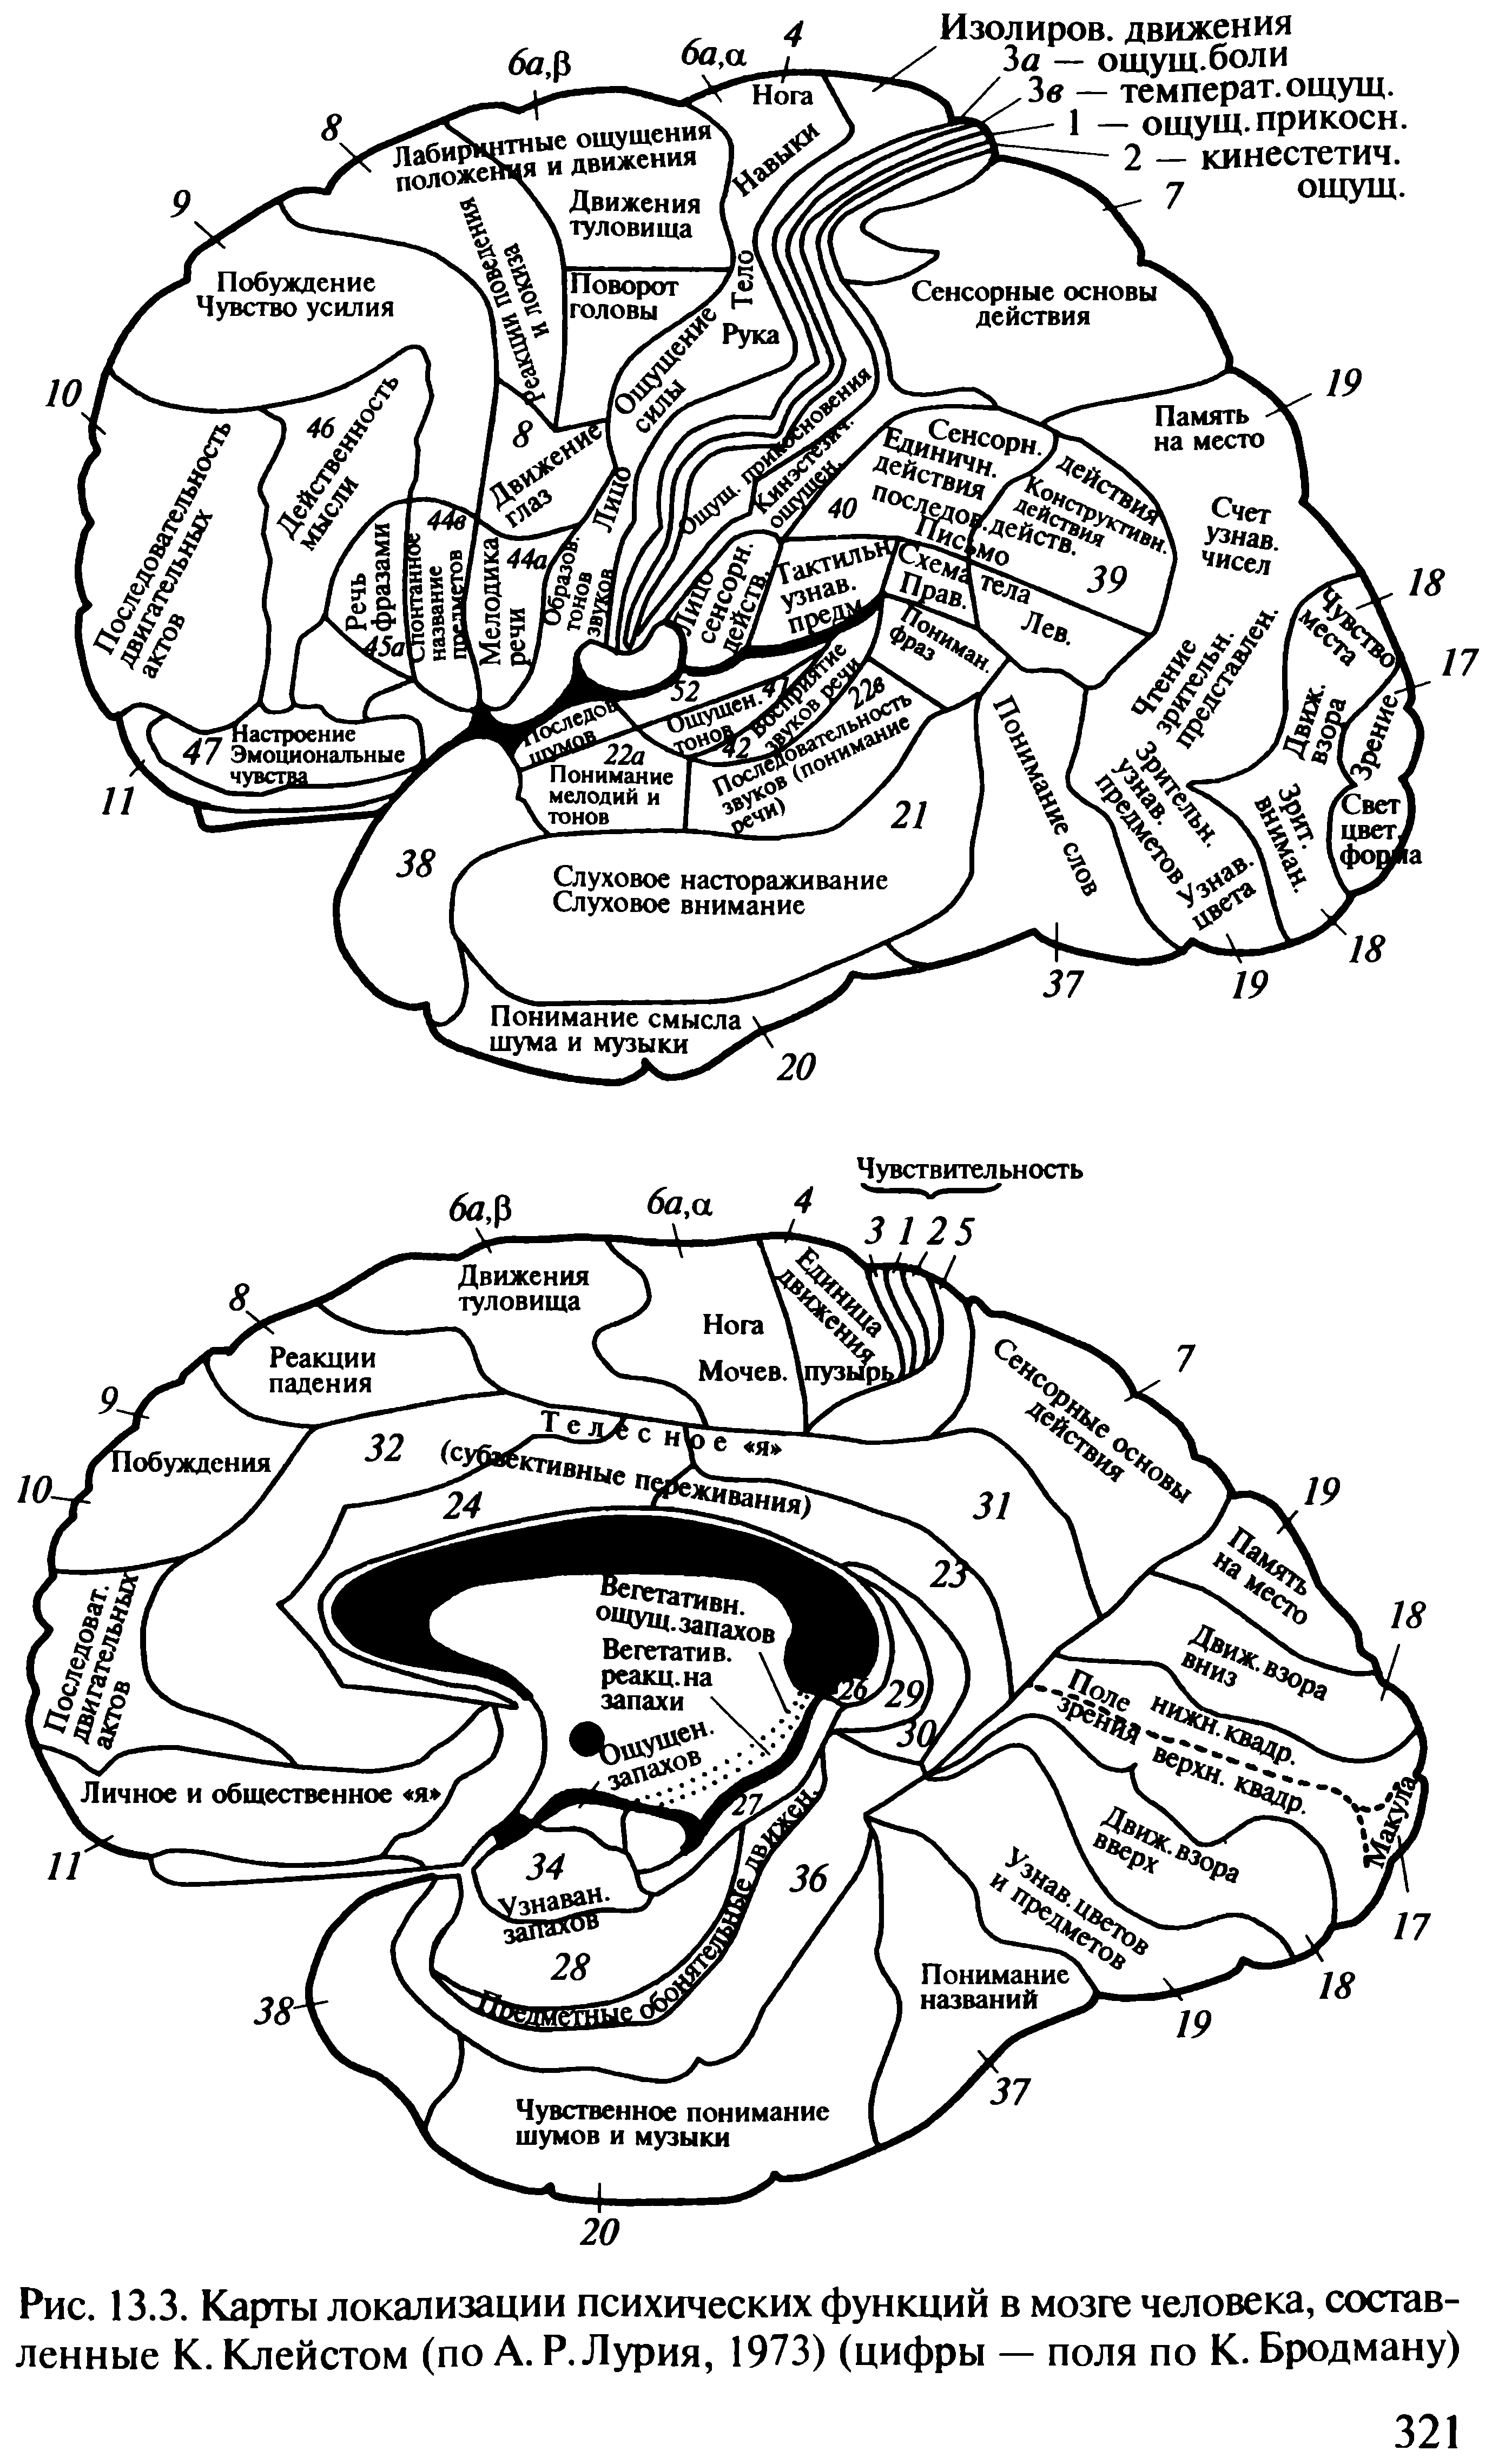 Локализация функций головного. Локализация функций в коре полушарий головного мозга. Карта локализации функций в коре головного мозга. Схема локализации функций в коре больших полушарий. К Клейст локализационная карта мозга.